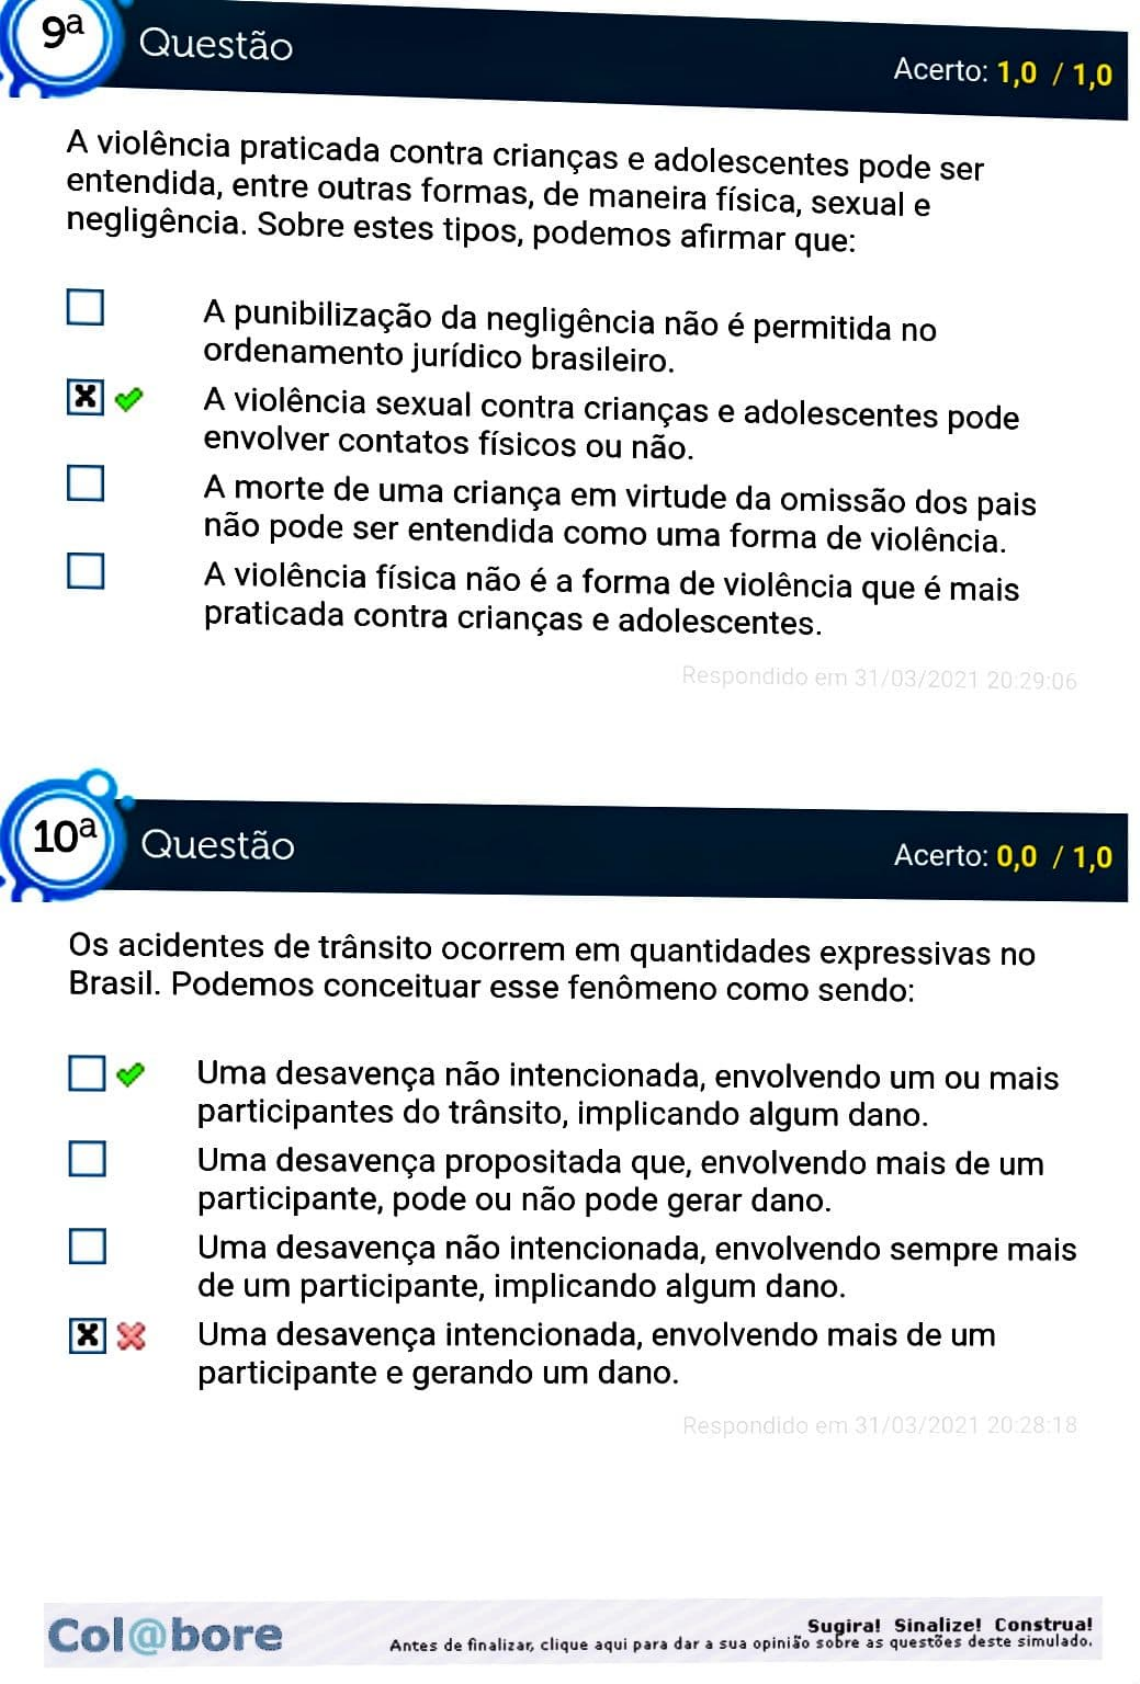 Brasil está alicerçado em uma pseudo-república, afirma cientista social -  Agência Envolverde 20/04/2018